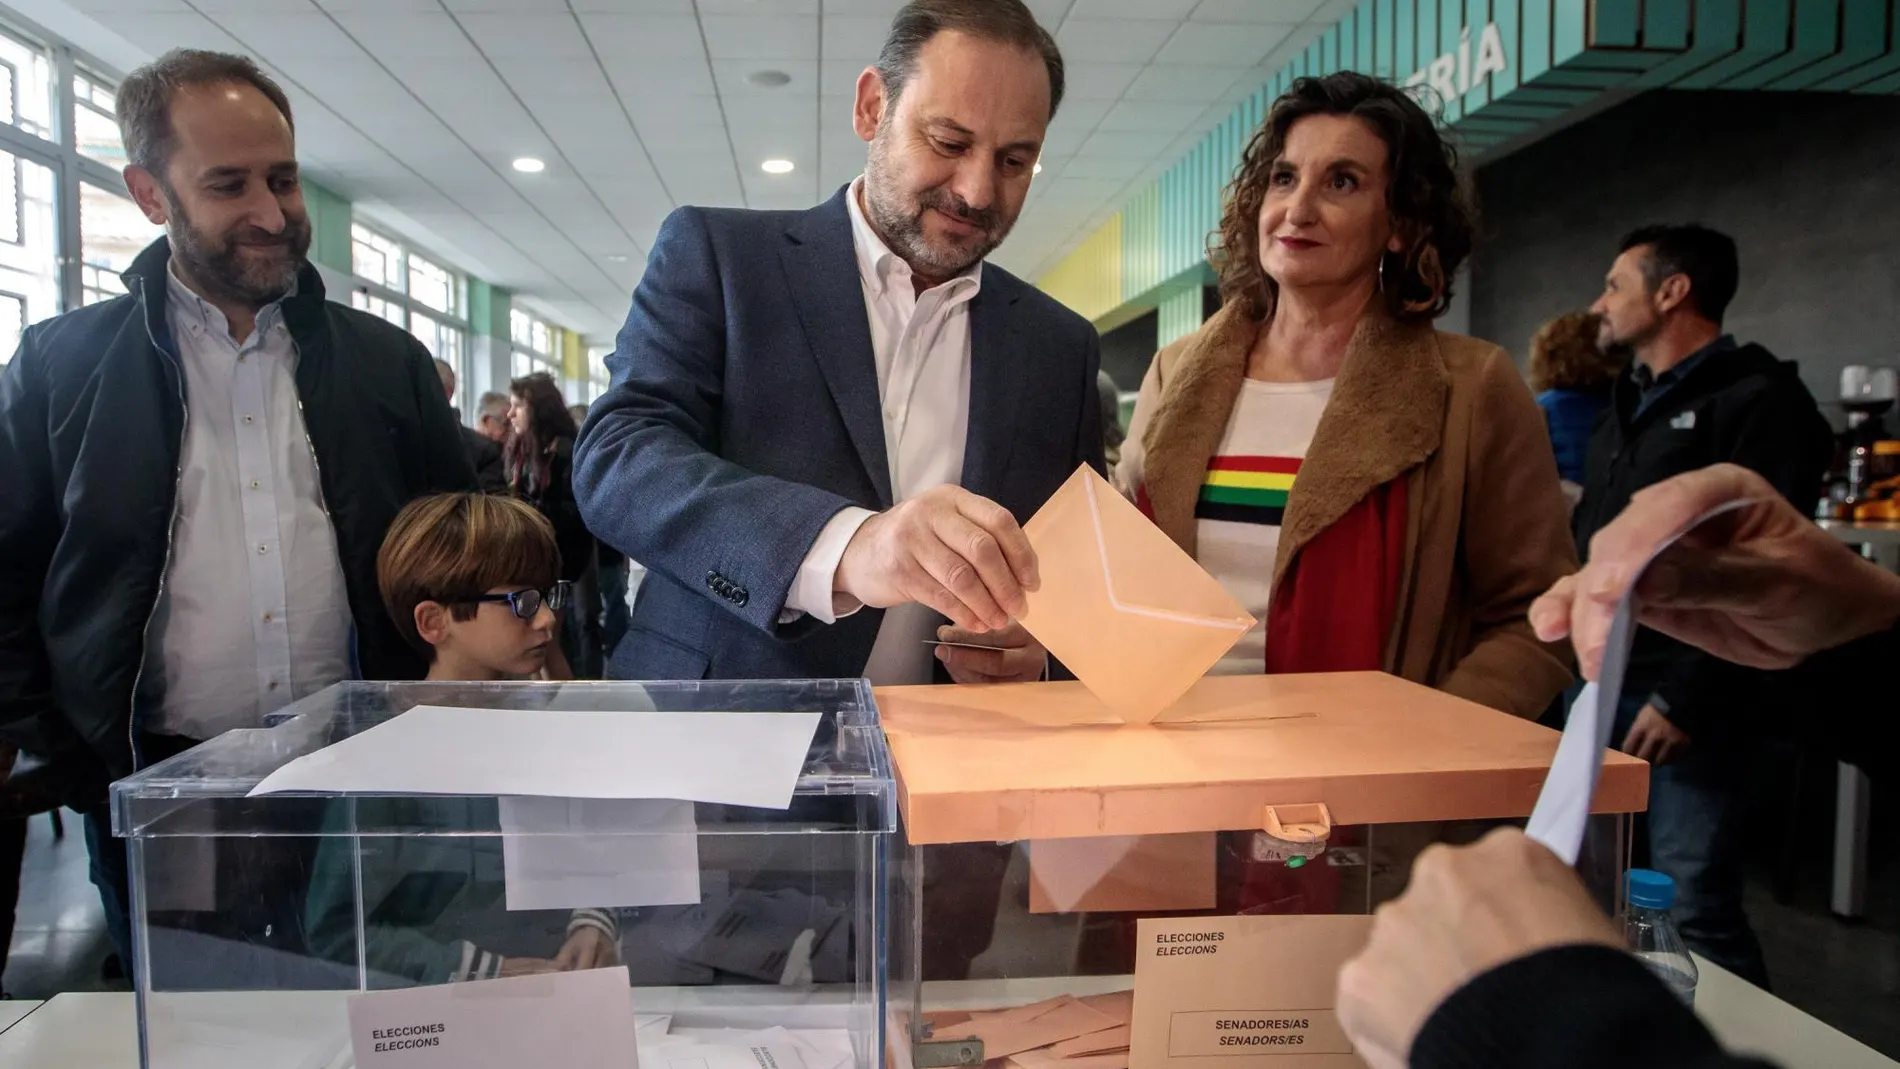 Los líderes valencianos animan a votar "pensando en la libertad"